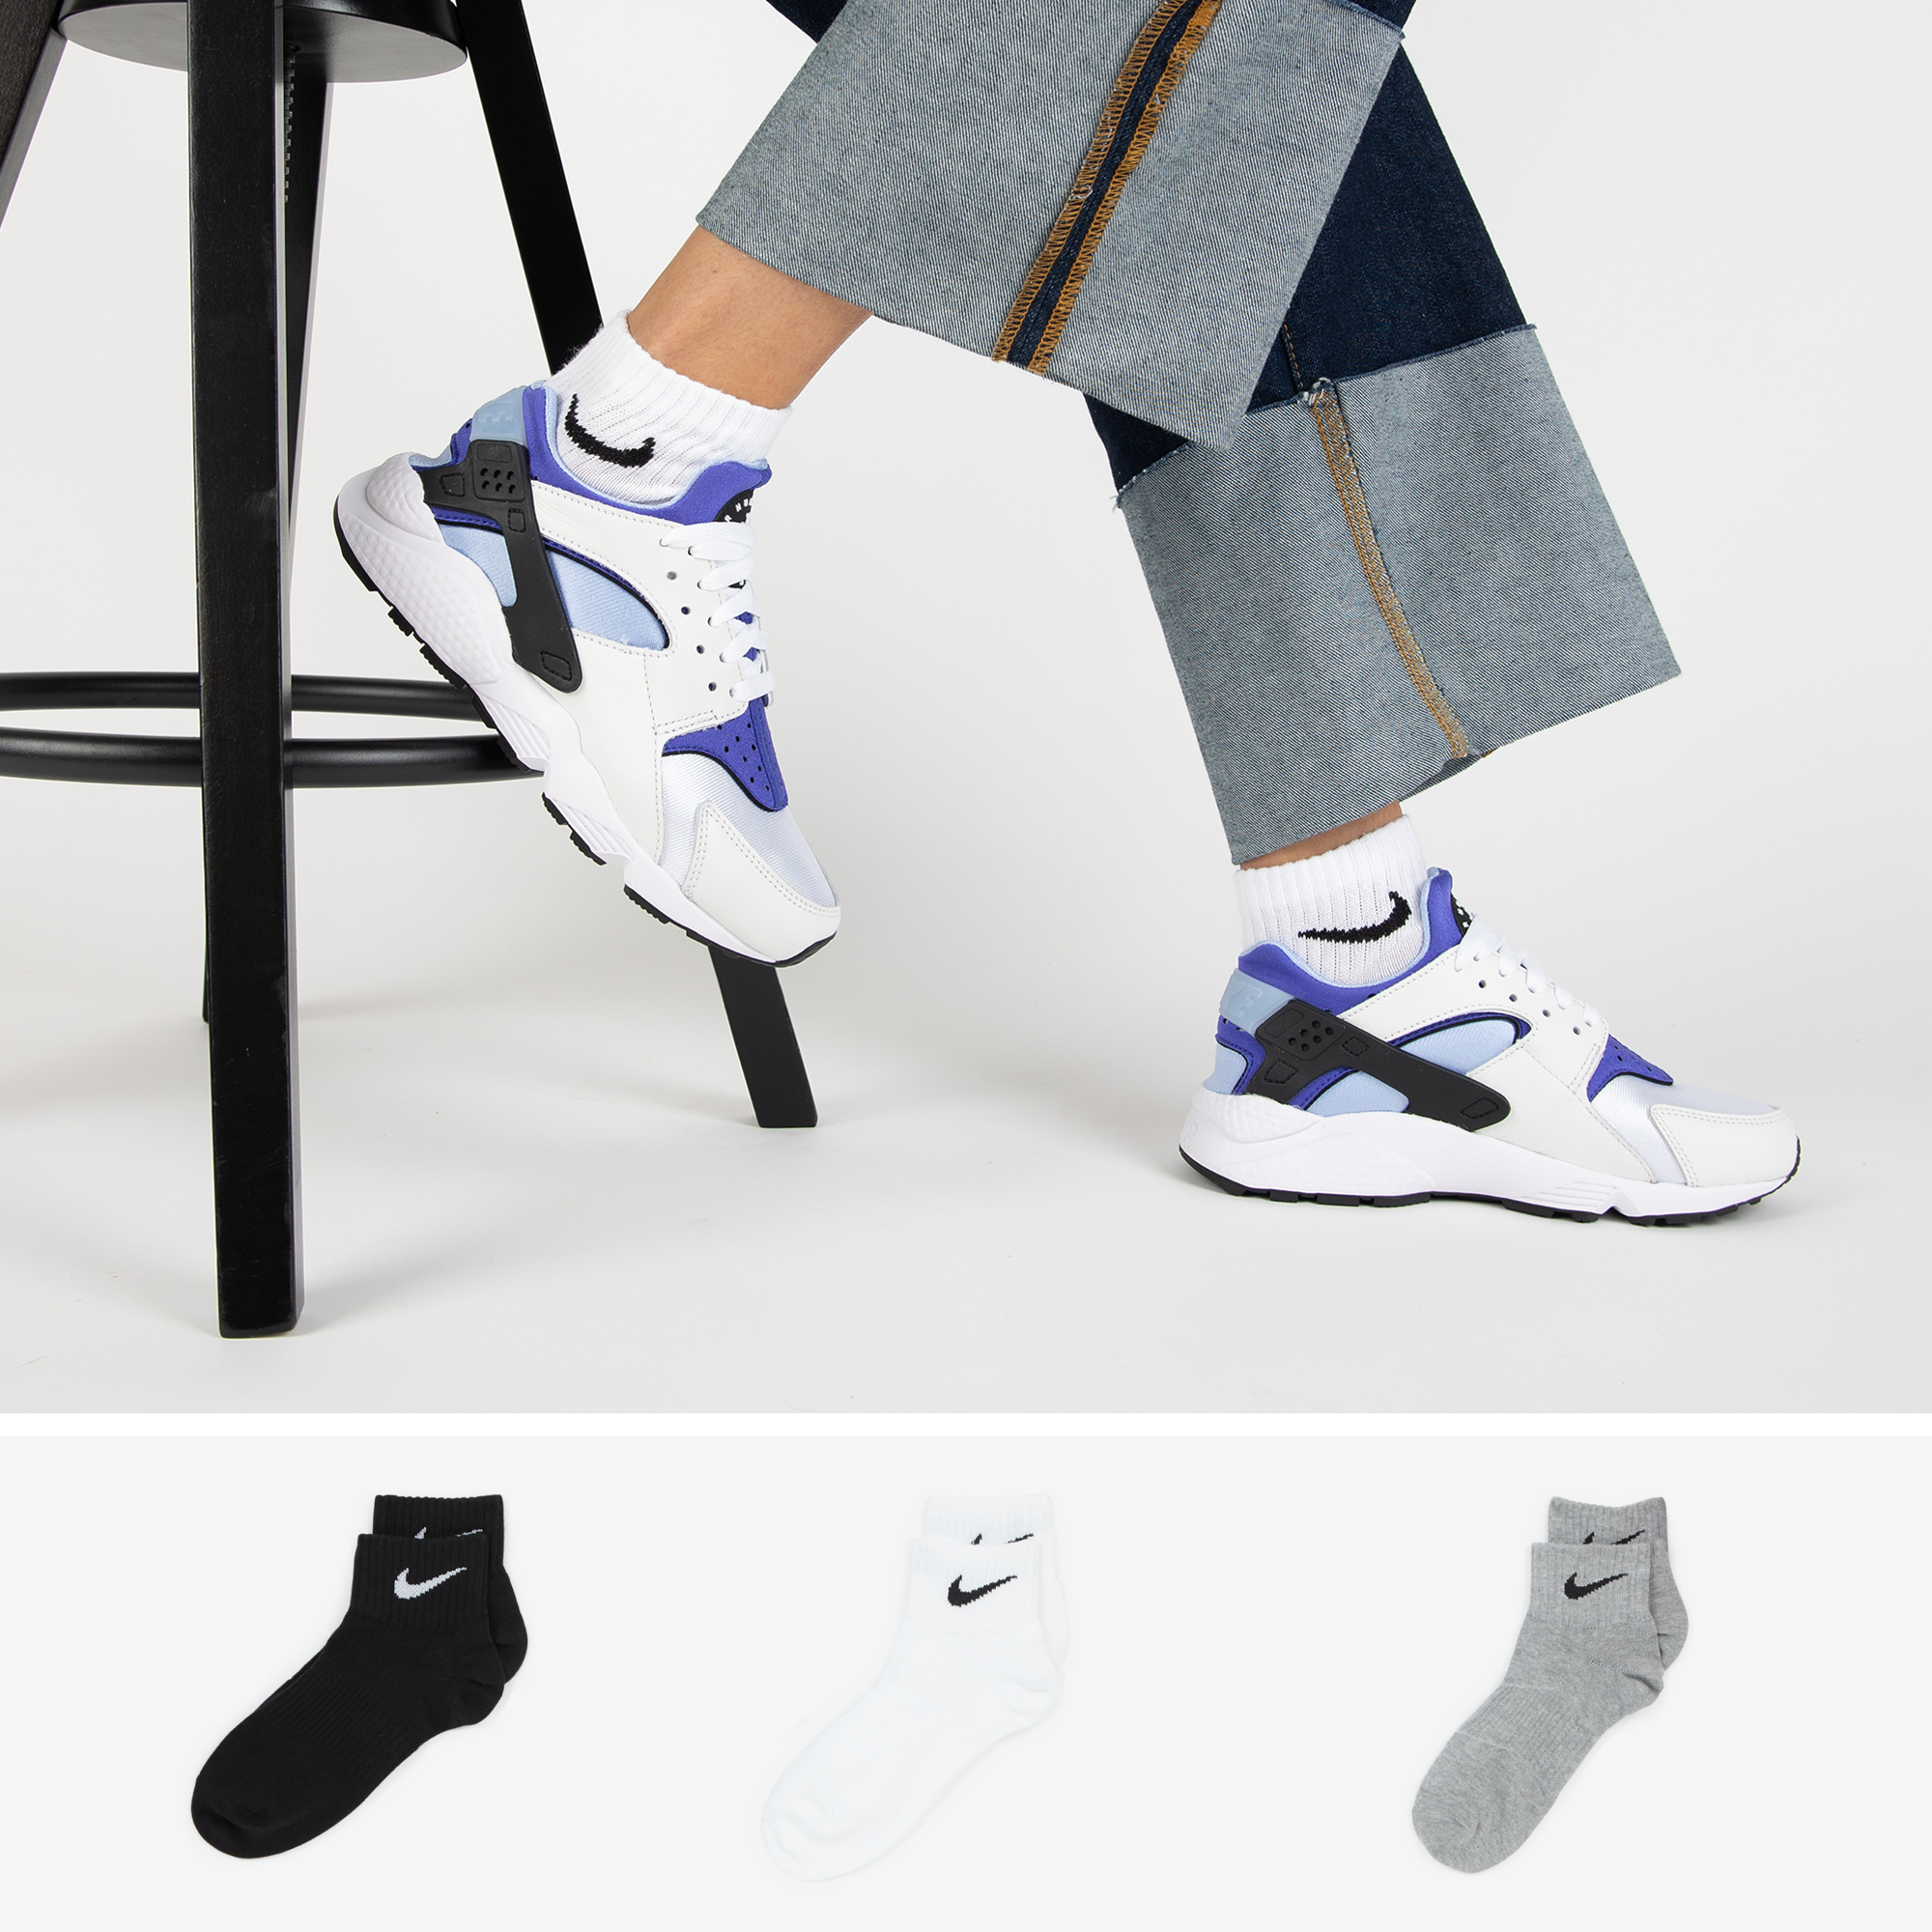 Nike Chaussettes X3 Quarter gris/noir 35/38 femme